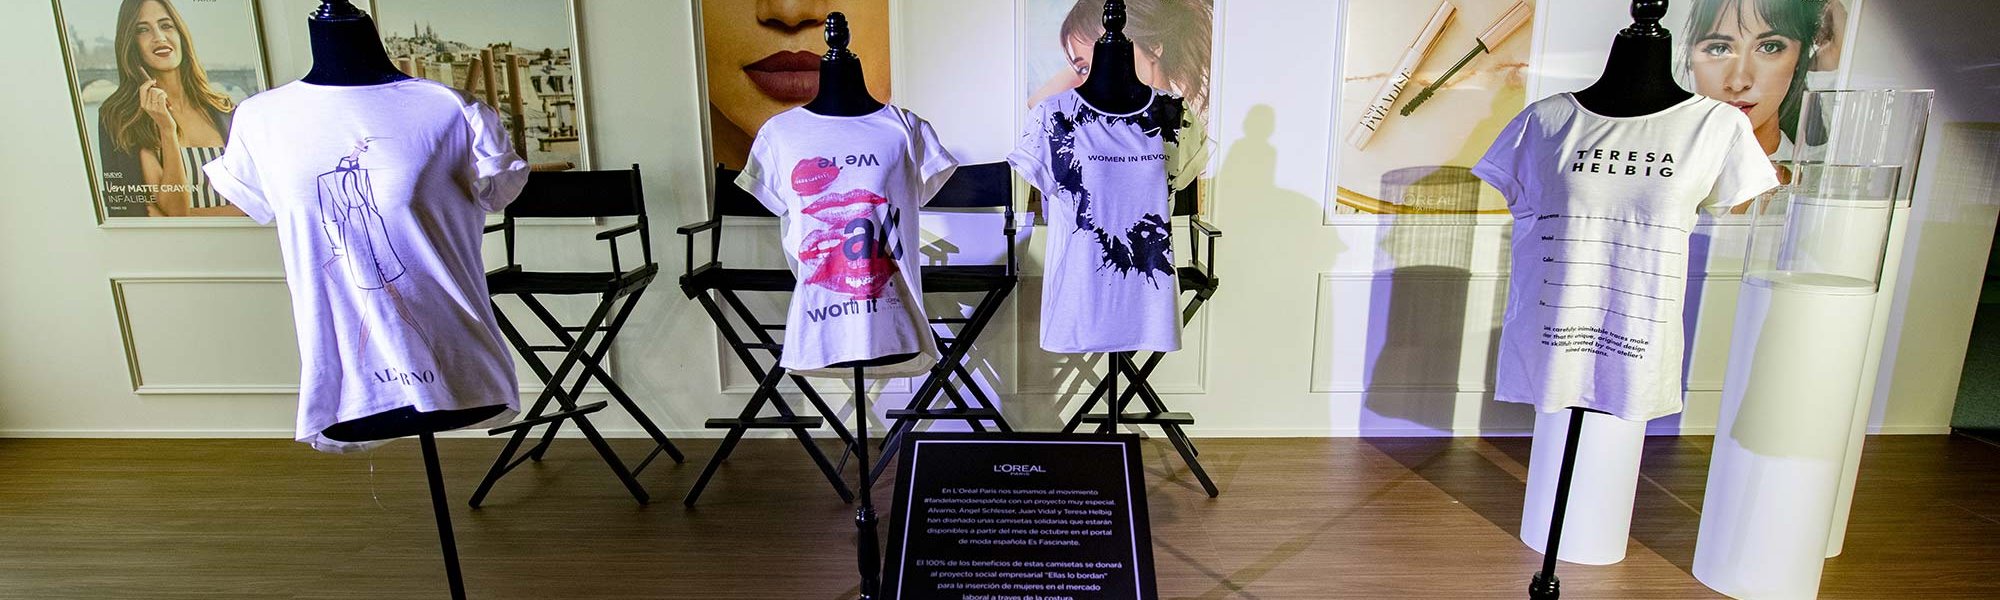 ¿Con cuál de estas camisetas de diseñadores españoles te quedas? Alvarno, Ángel Shclesser, Juan Vidal y Teresa Helbig se han sumado a una iniciativa solidaria liderada por L’Oréal Paris y ACME (Asociación de Creadores de Moda de España).